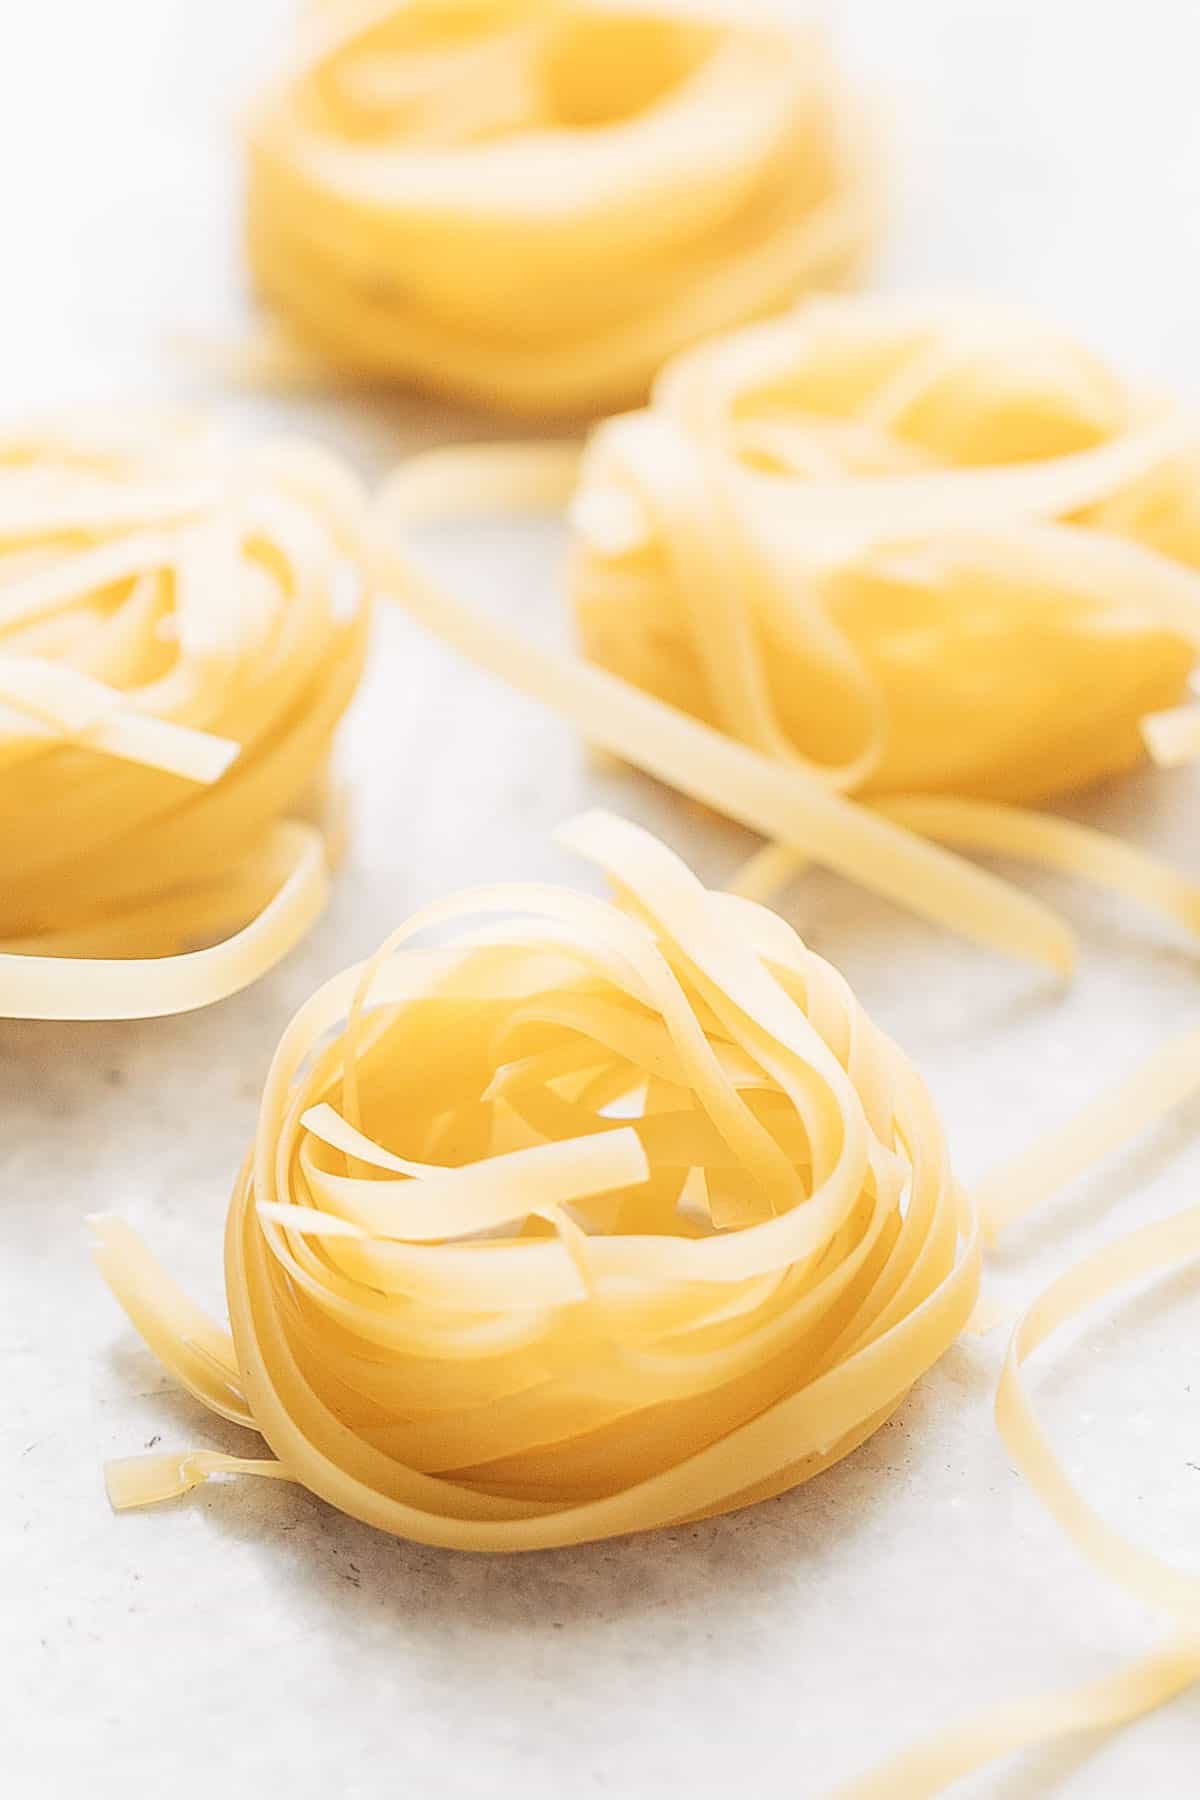 A picture of dried tagliatelle pasta for creamy prawn scampi pasta recipe